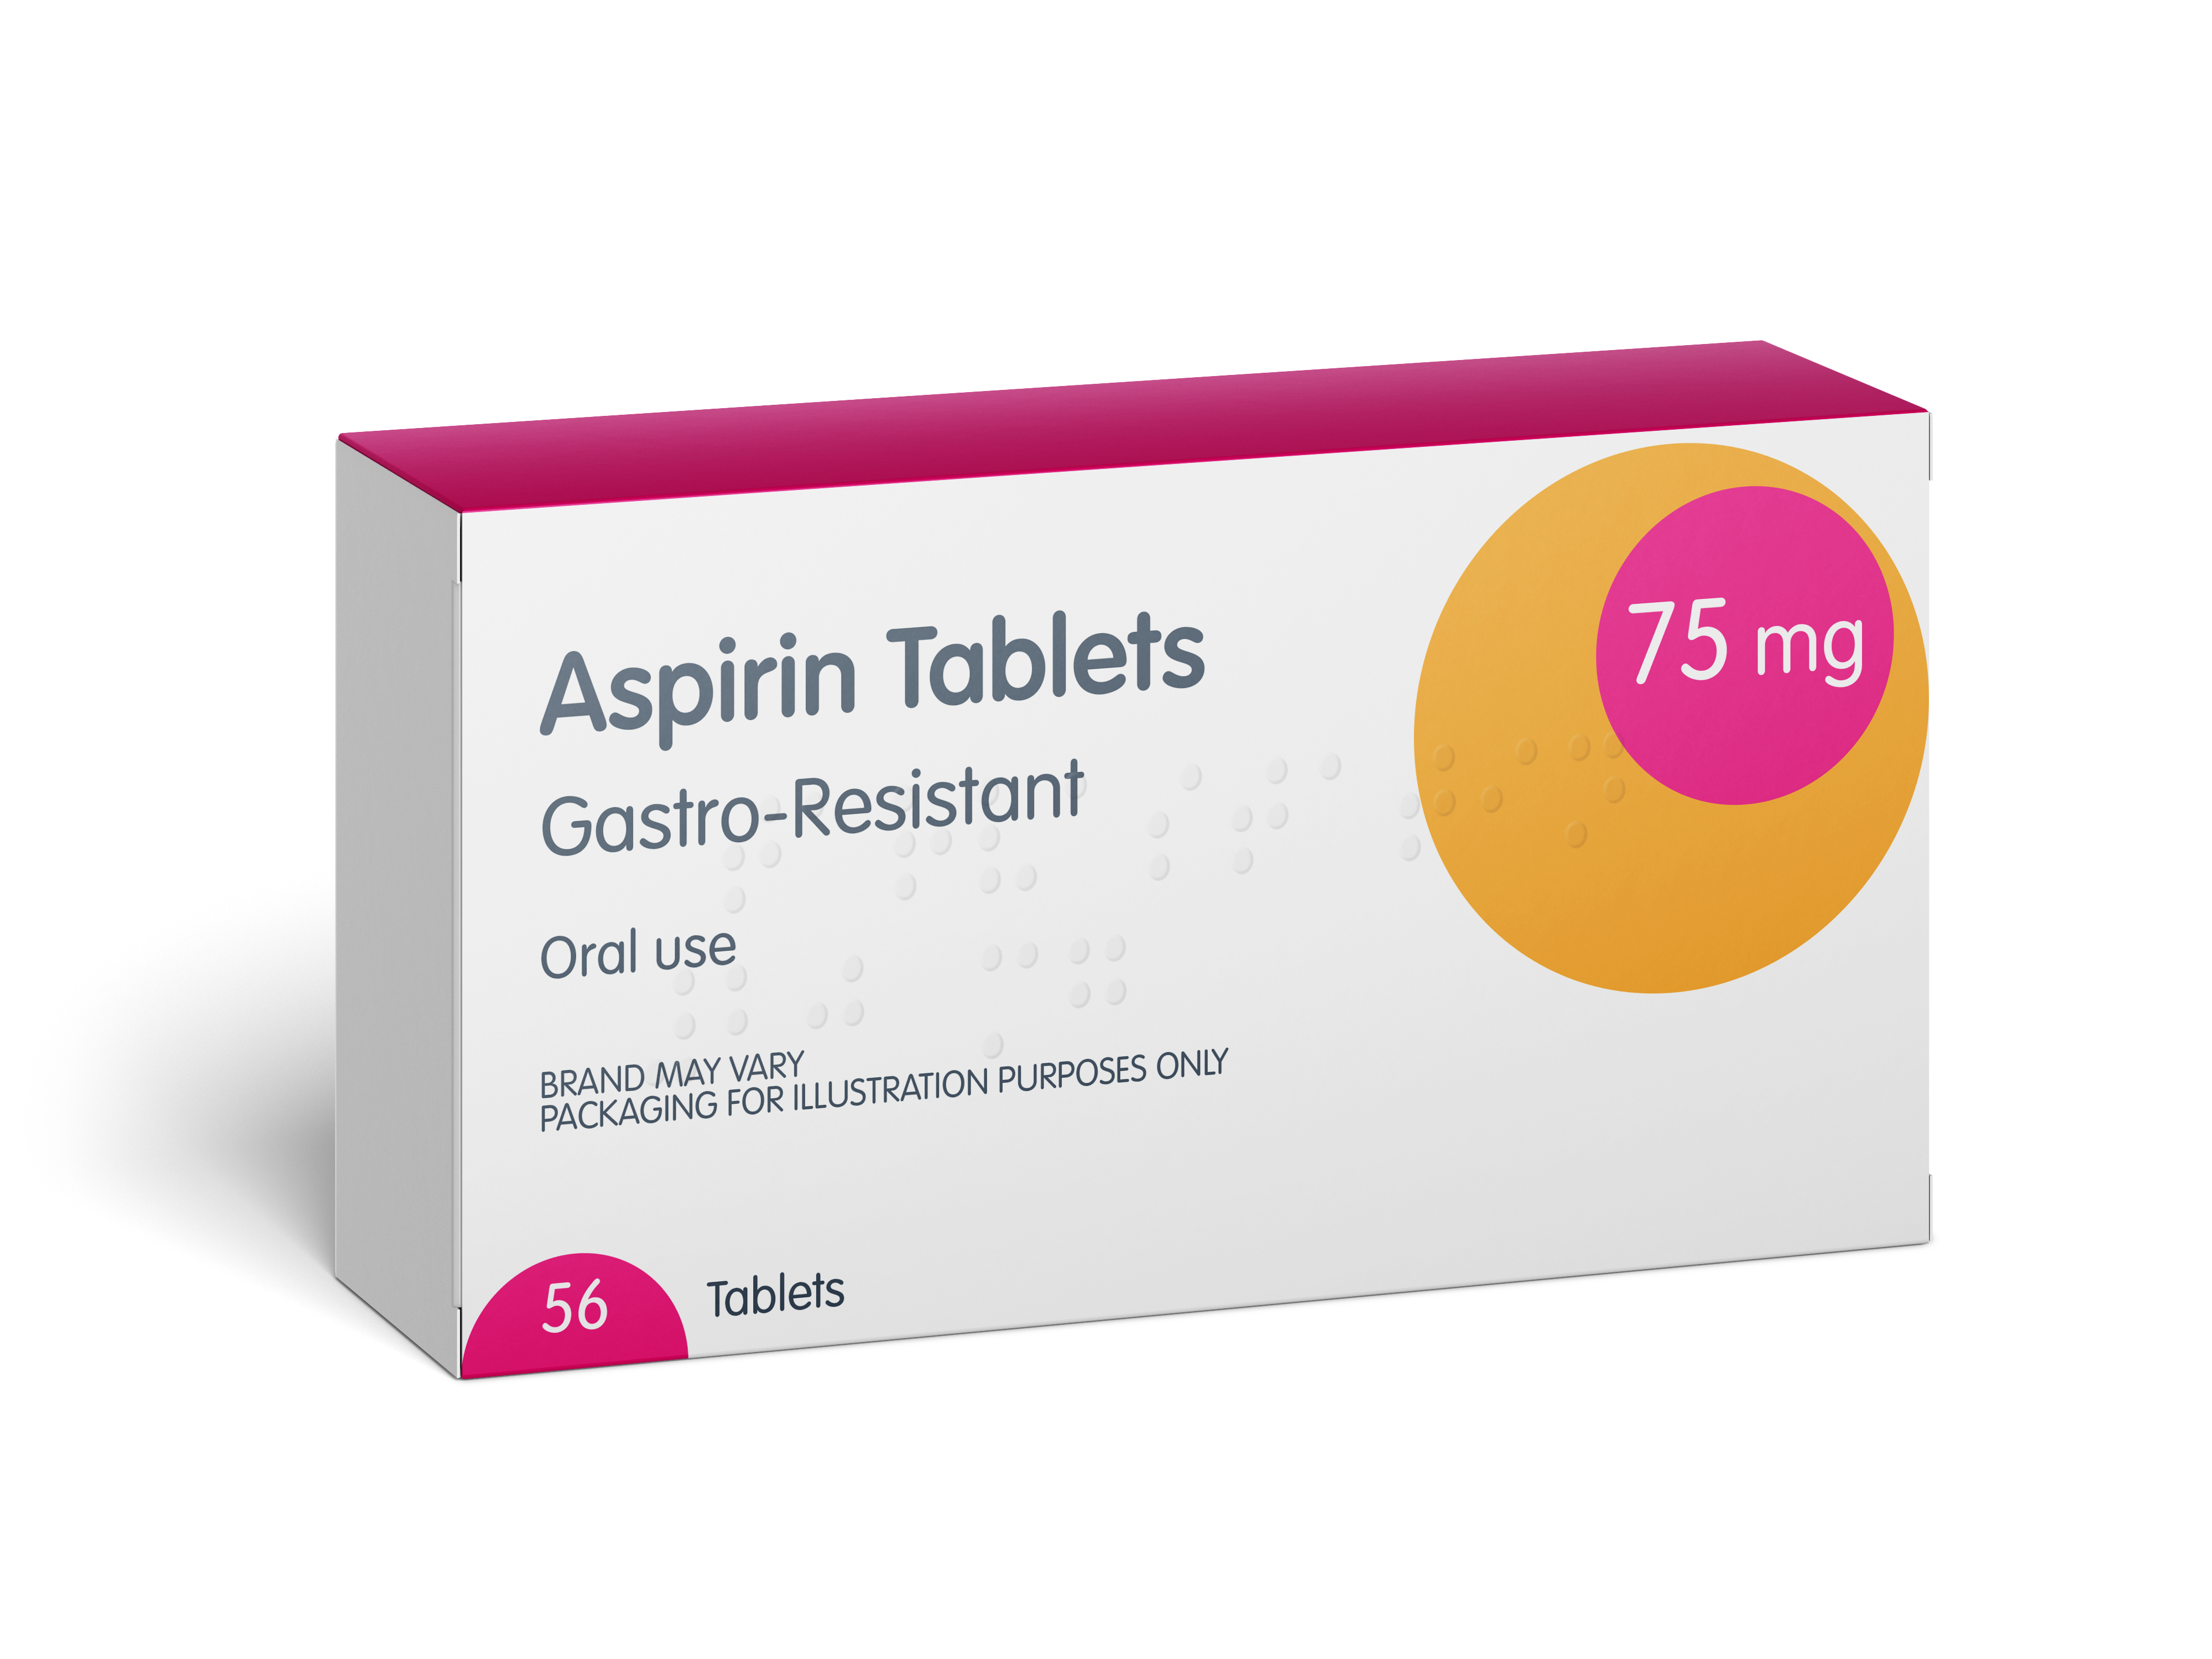 Aspirin 75mg Gastro-Resistant Tablets - 56 tablets